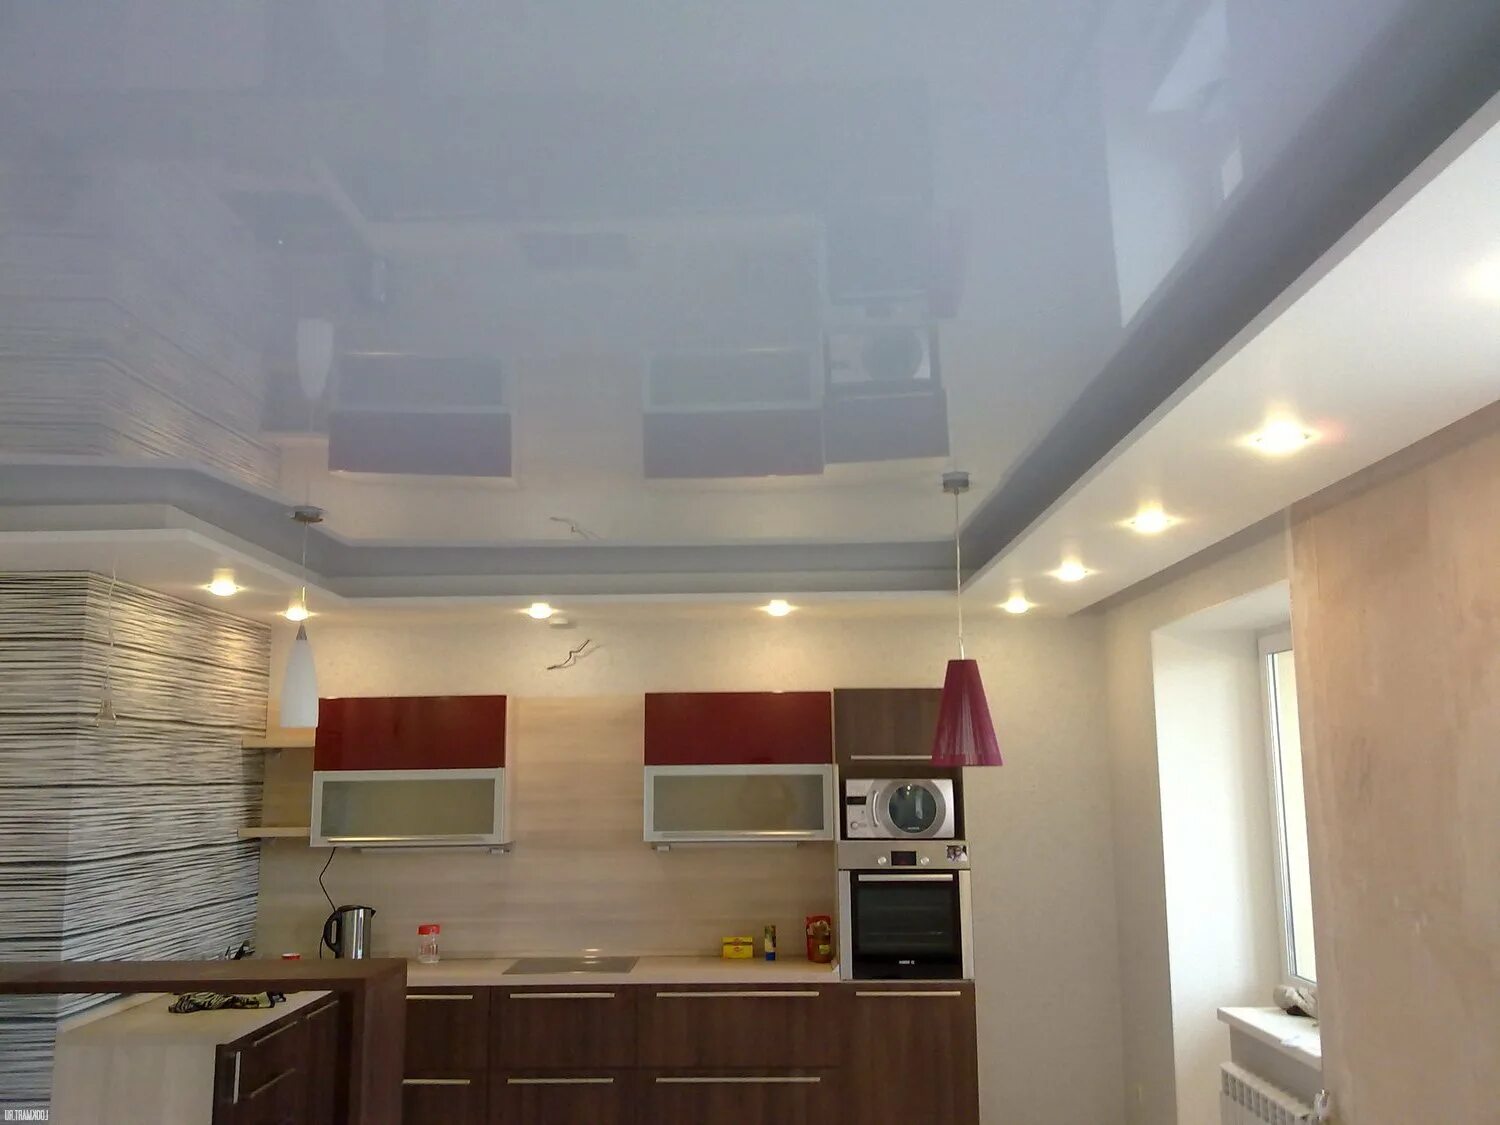 Натяжной потолок на кухне. Подвесной потолок на кухне. Двухъярусный потолок на кухне. Двухуровневый потолок на кухне. Потолок кухня видео